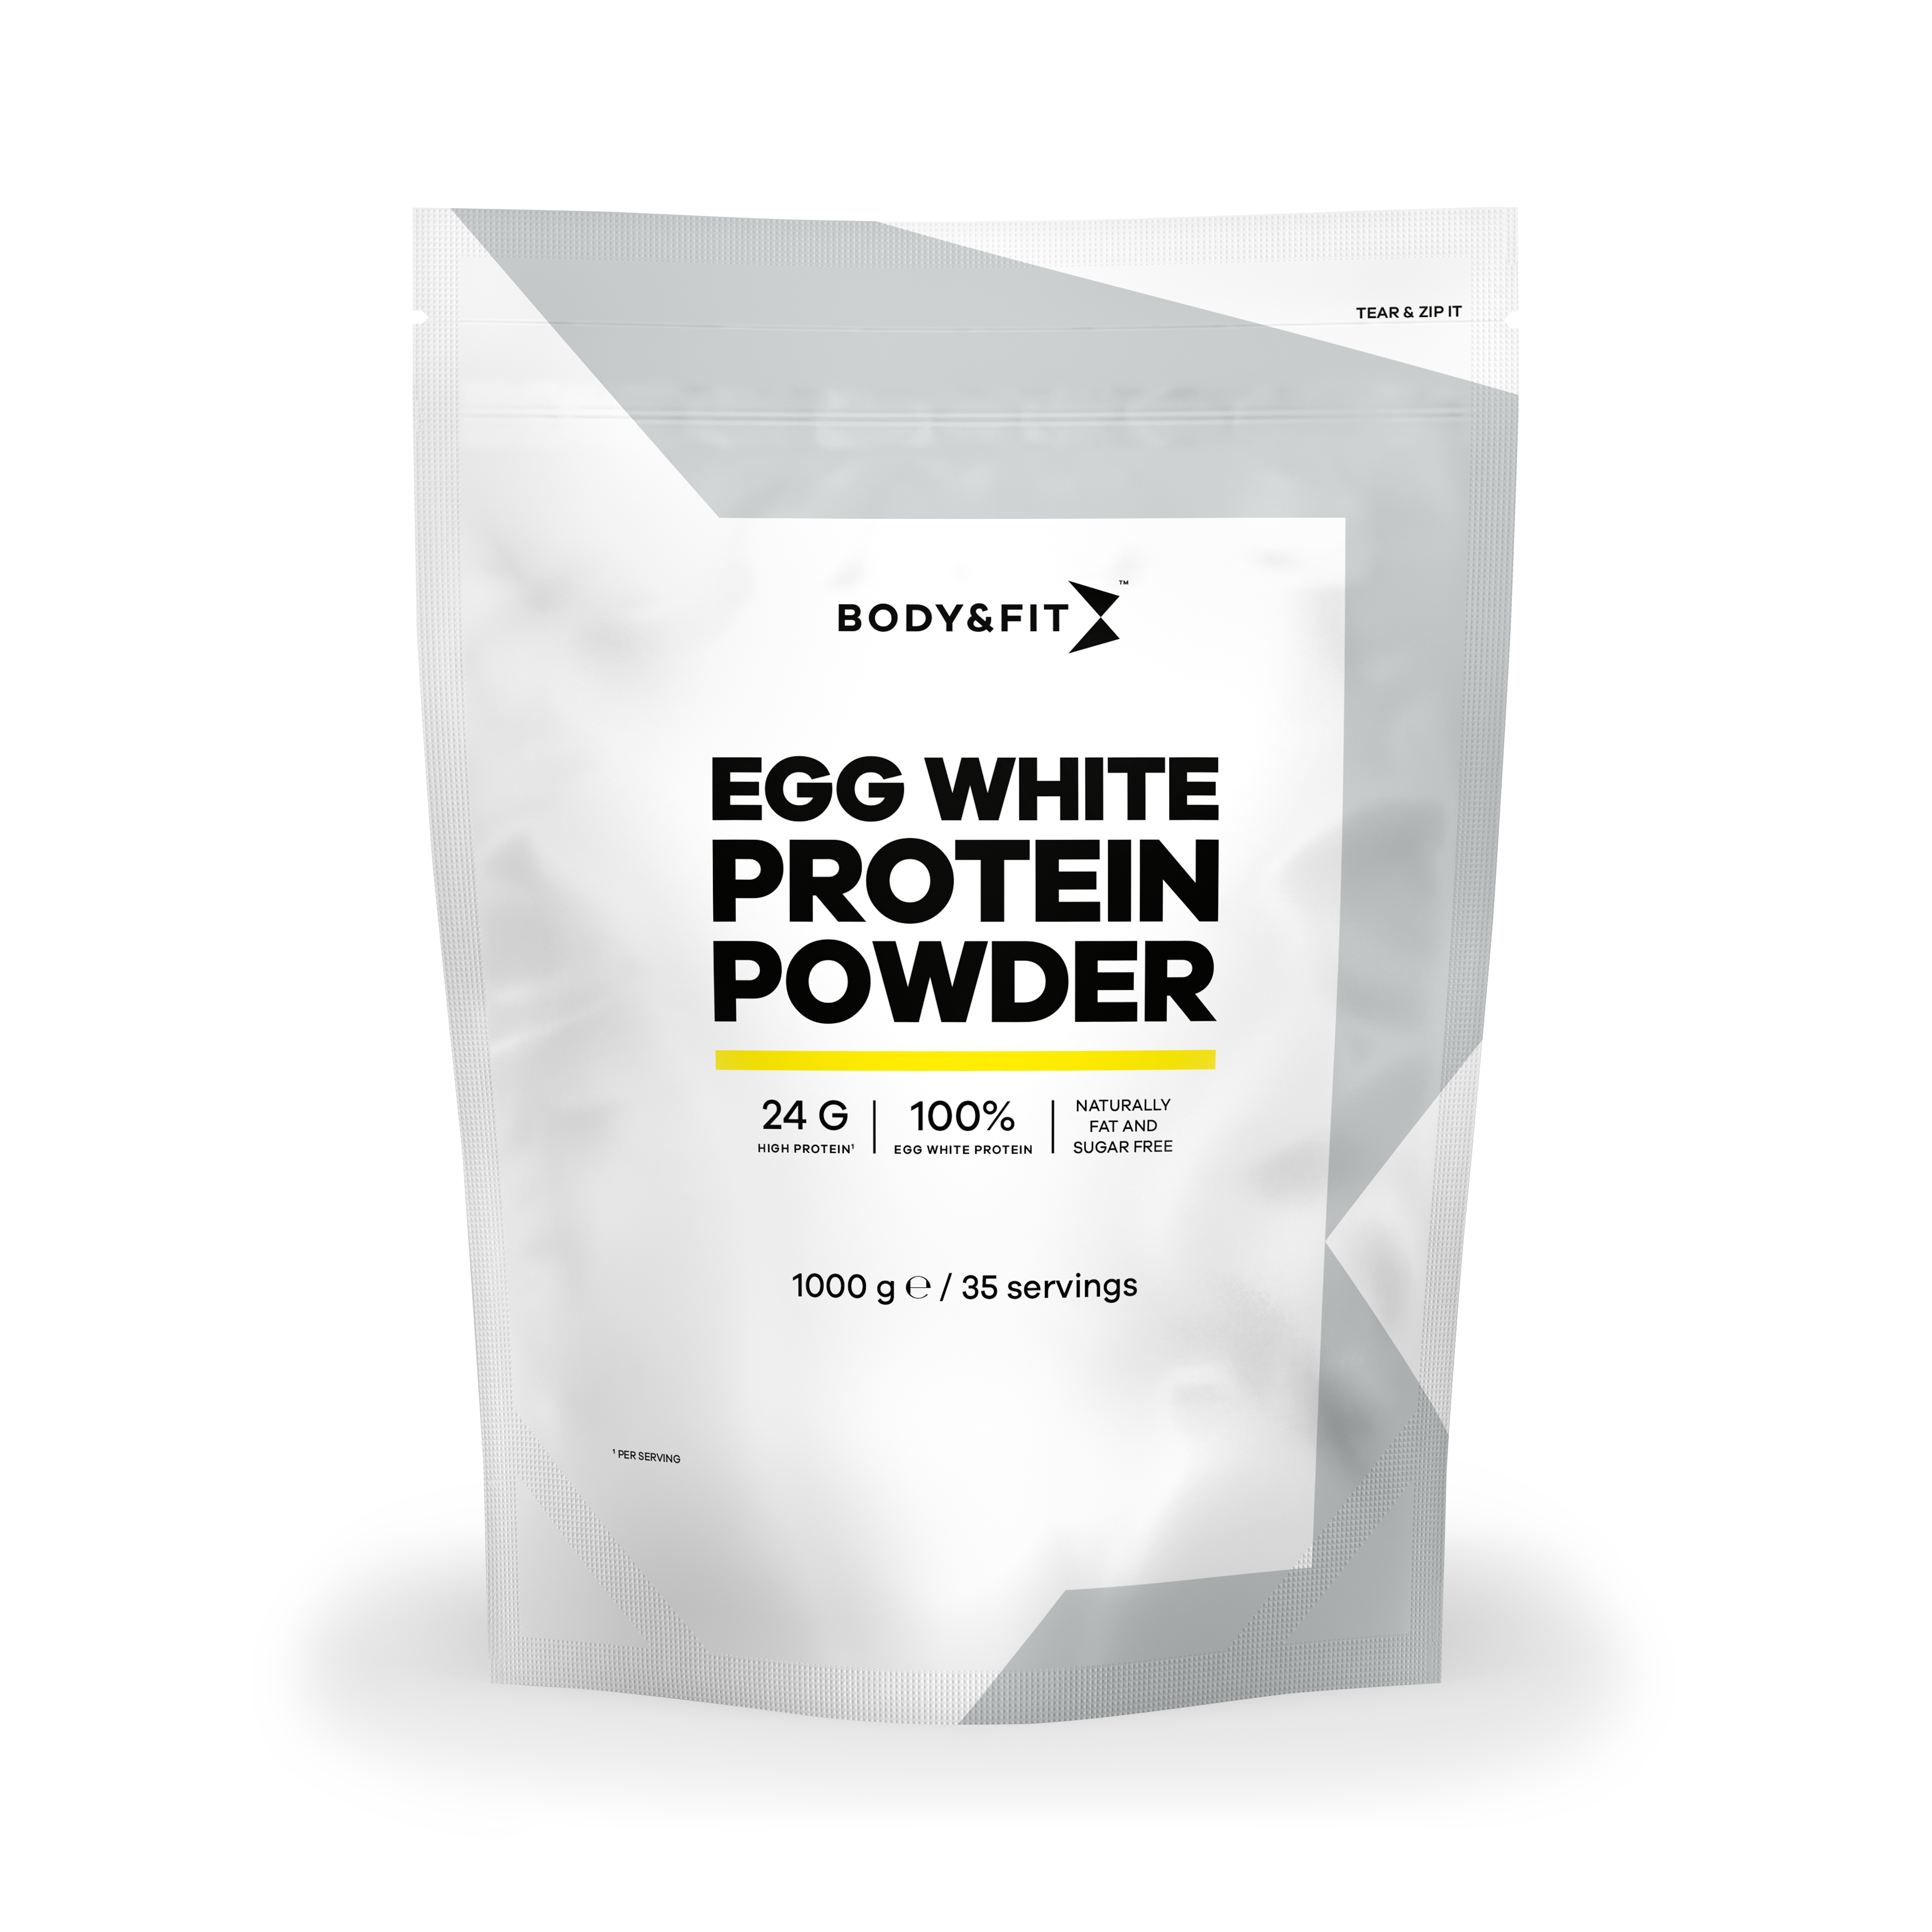 Egg White Protein Powder